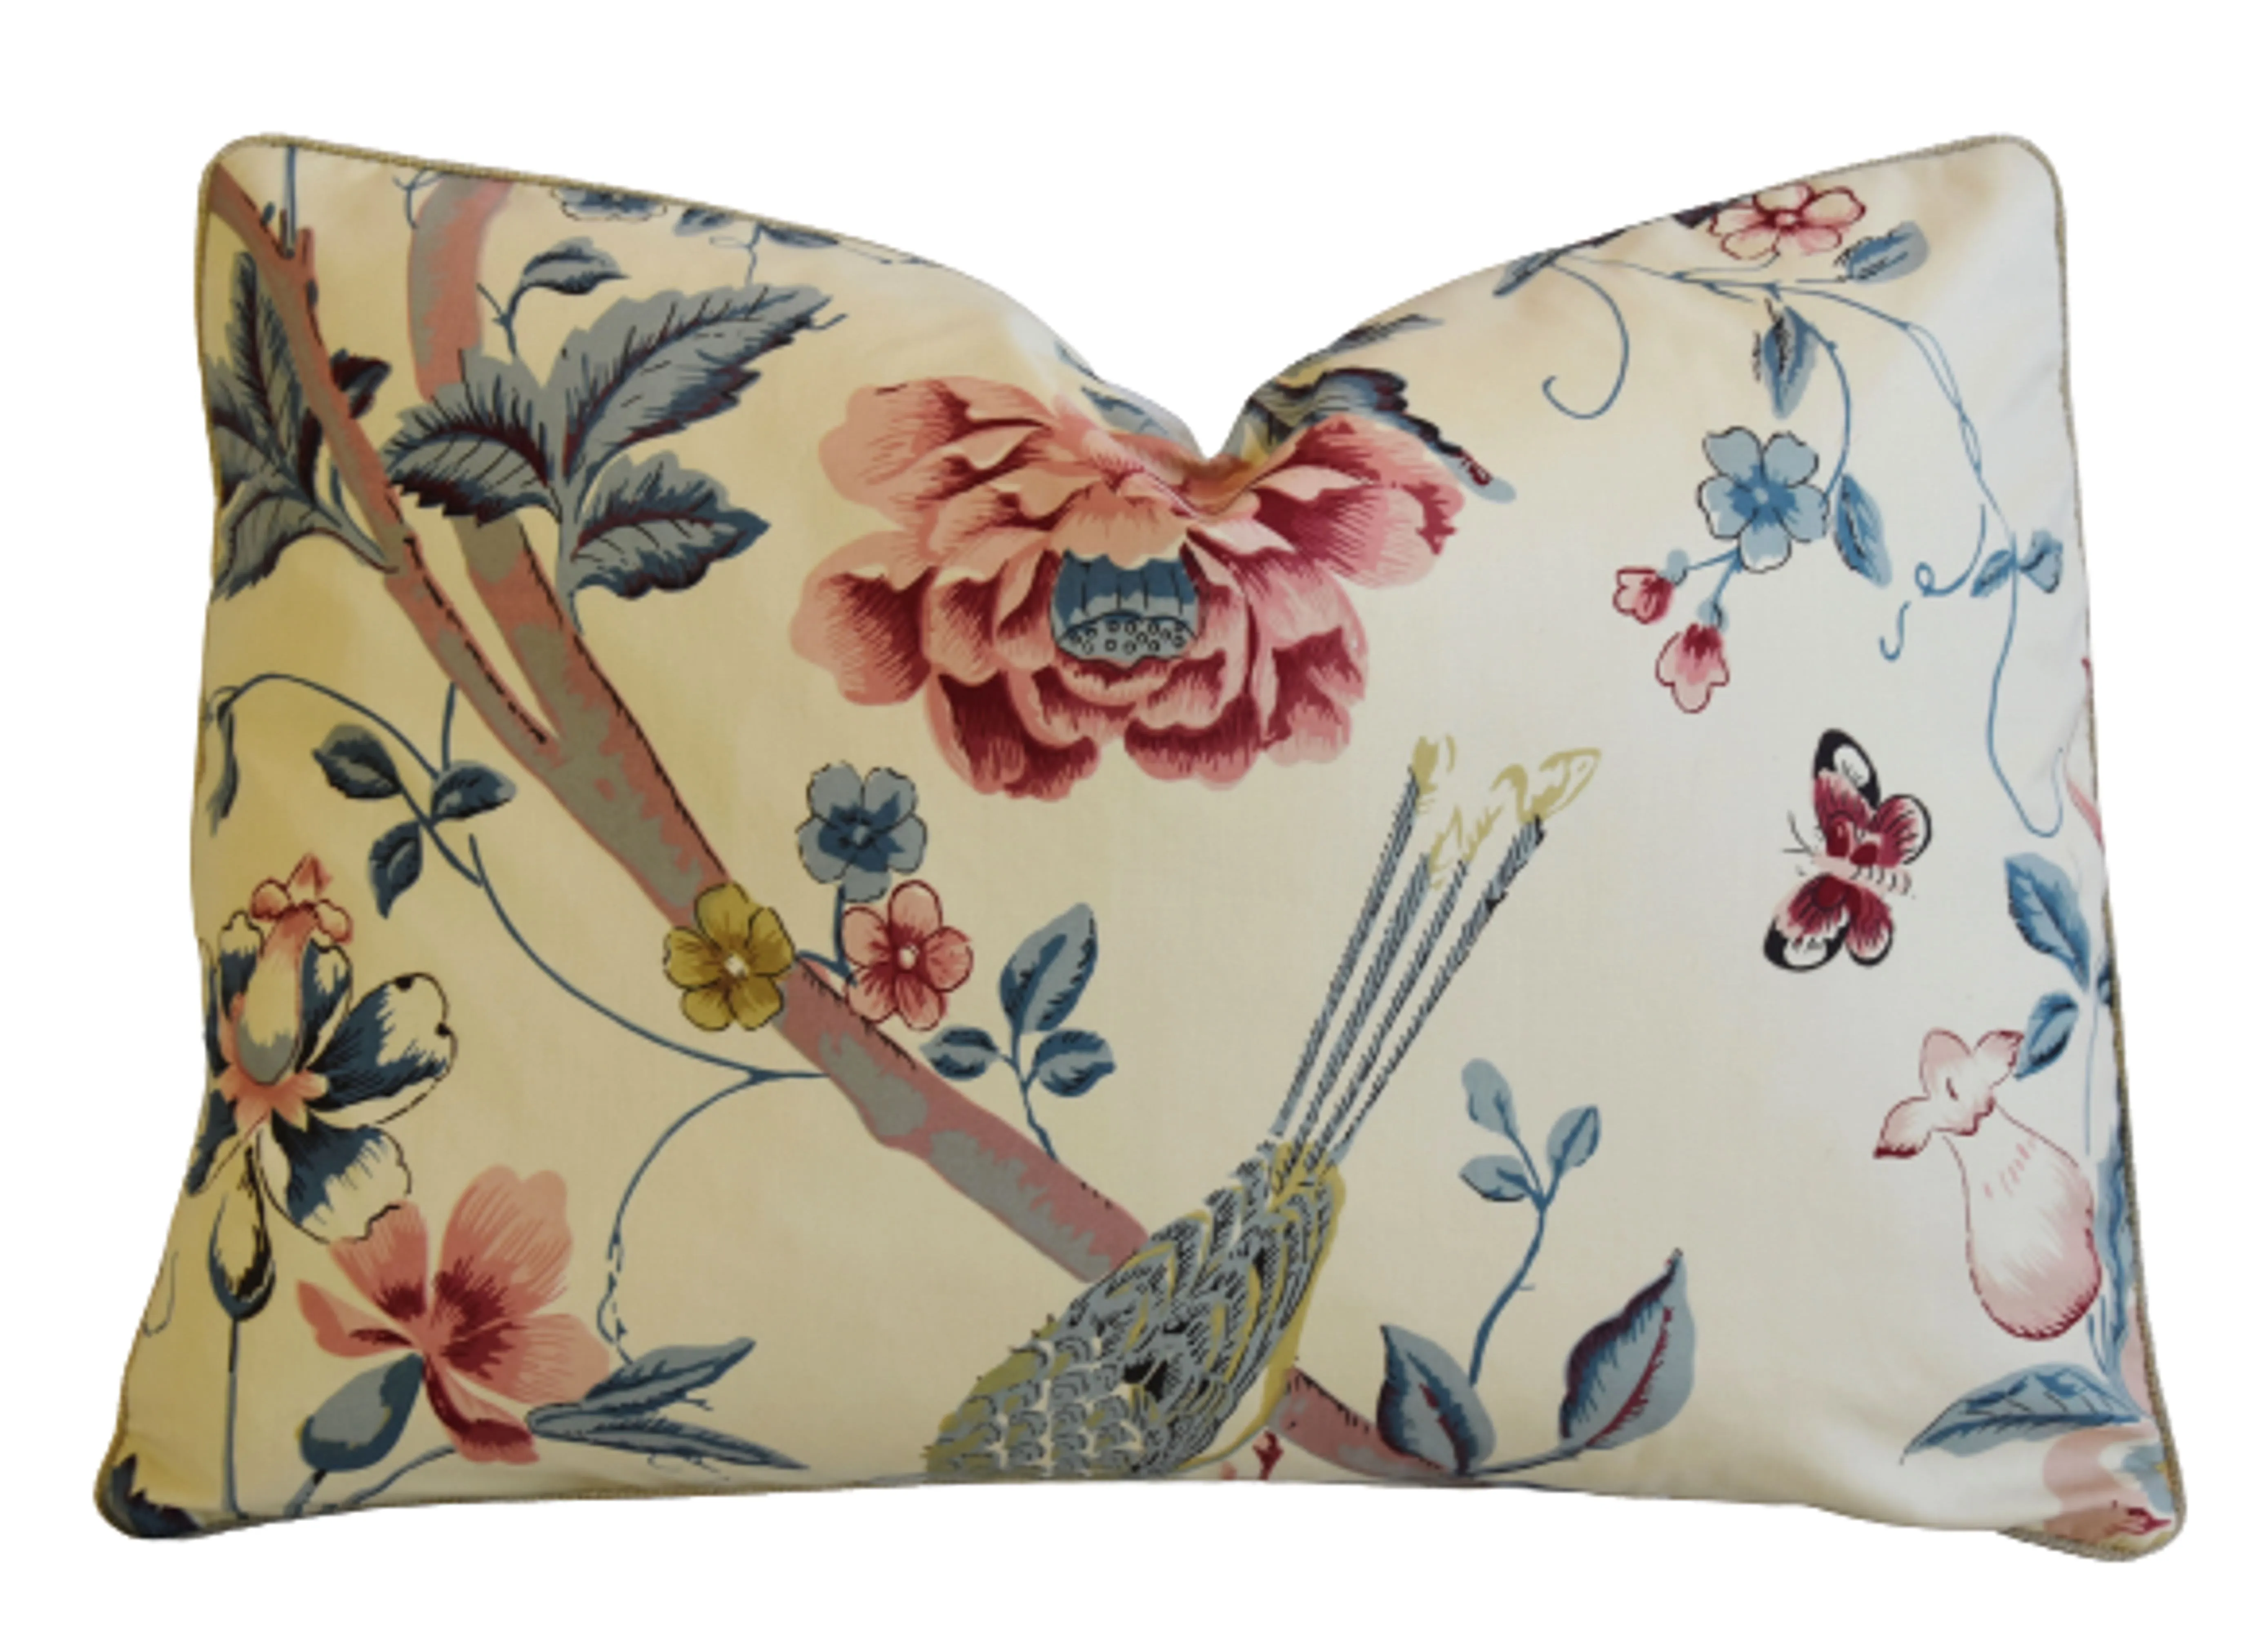 Titley & Marr Chinoiserie Bird Pillow